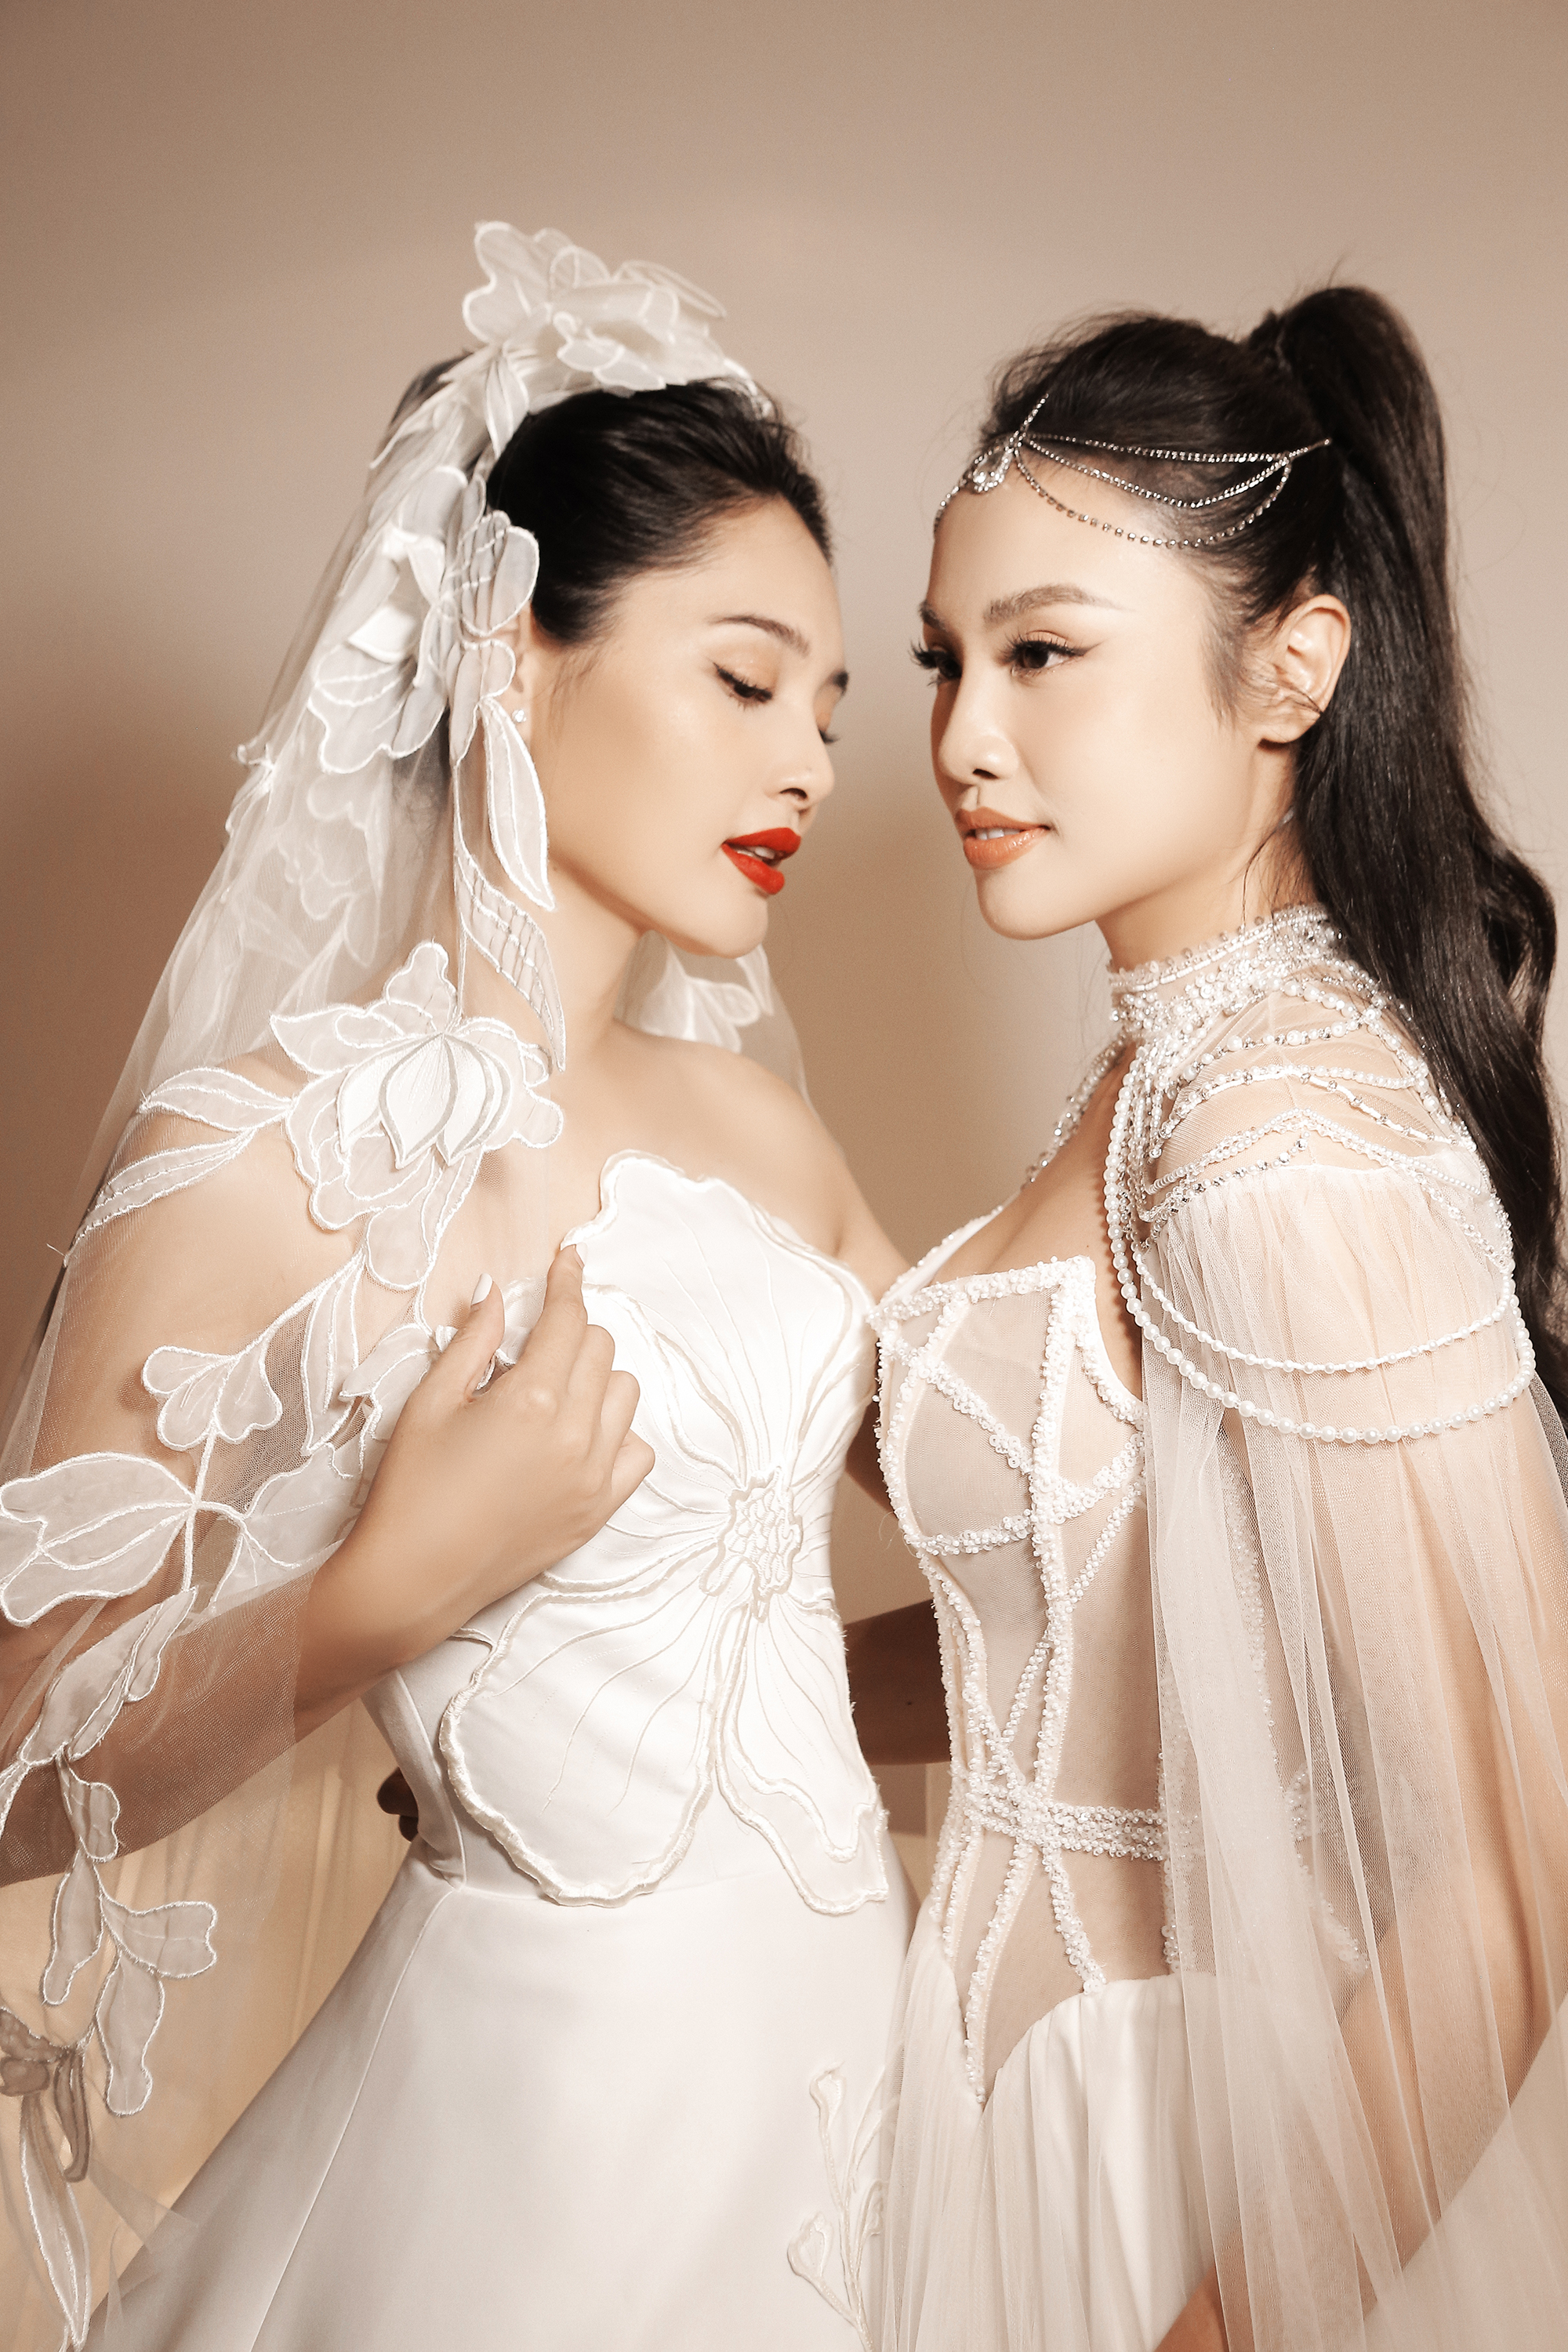 Á hậu Thủy Tiên trình diễn áo cưới cùng Hoa hậu đẹp nhất châu Á 2009 - Ảnh 1.